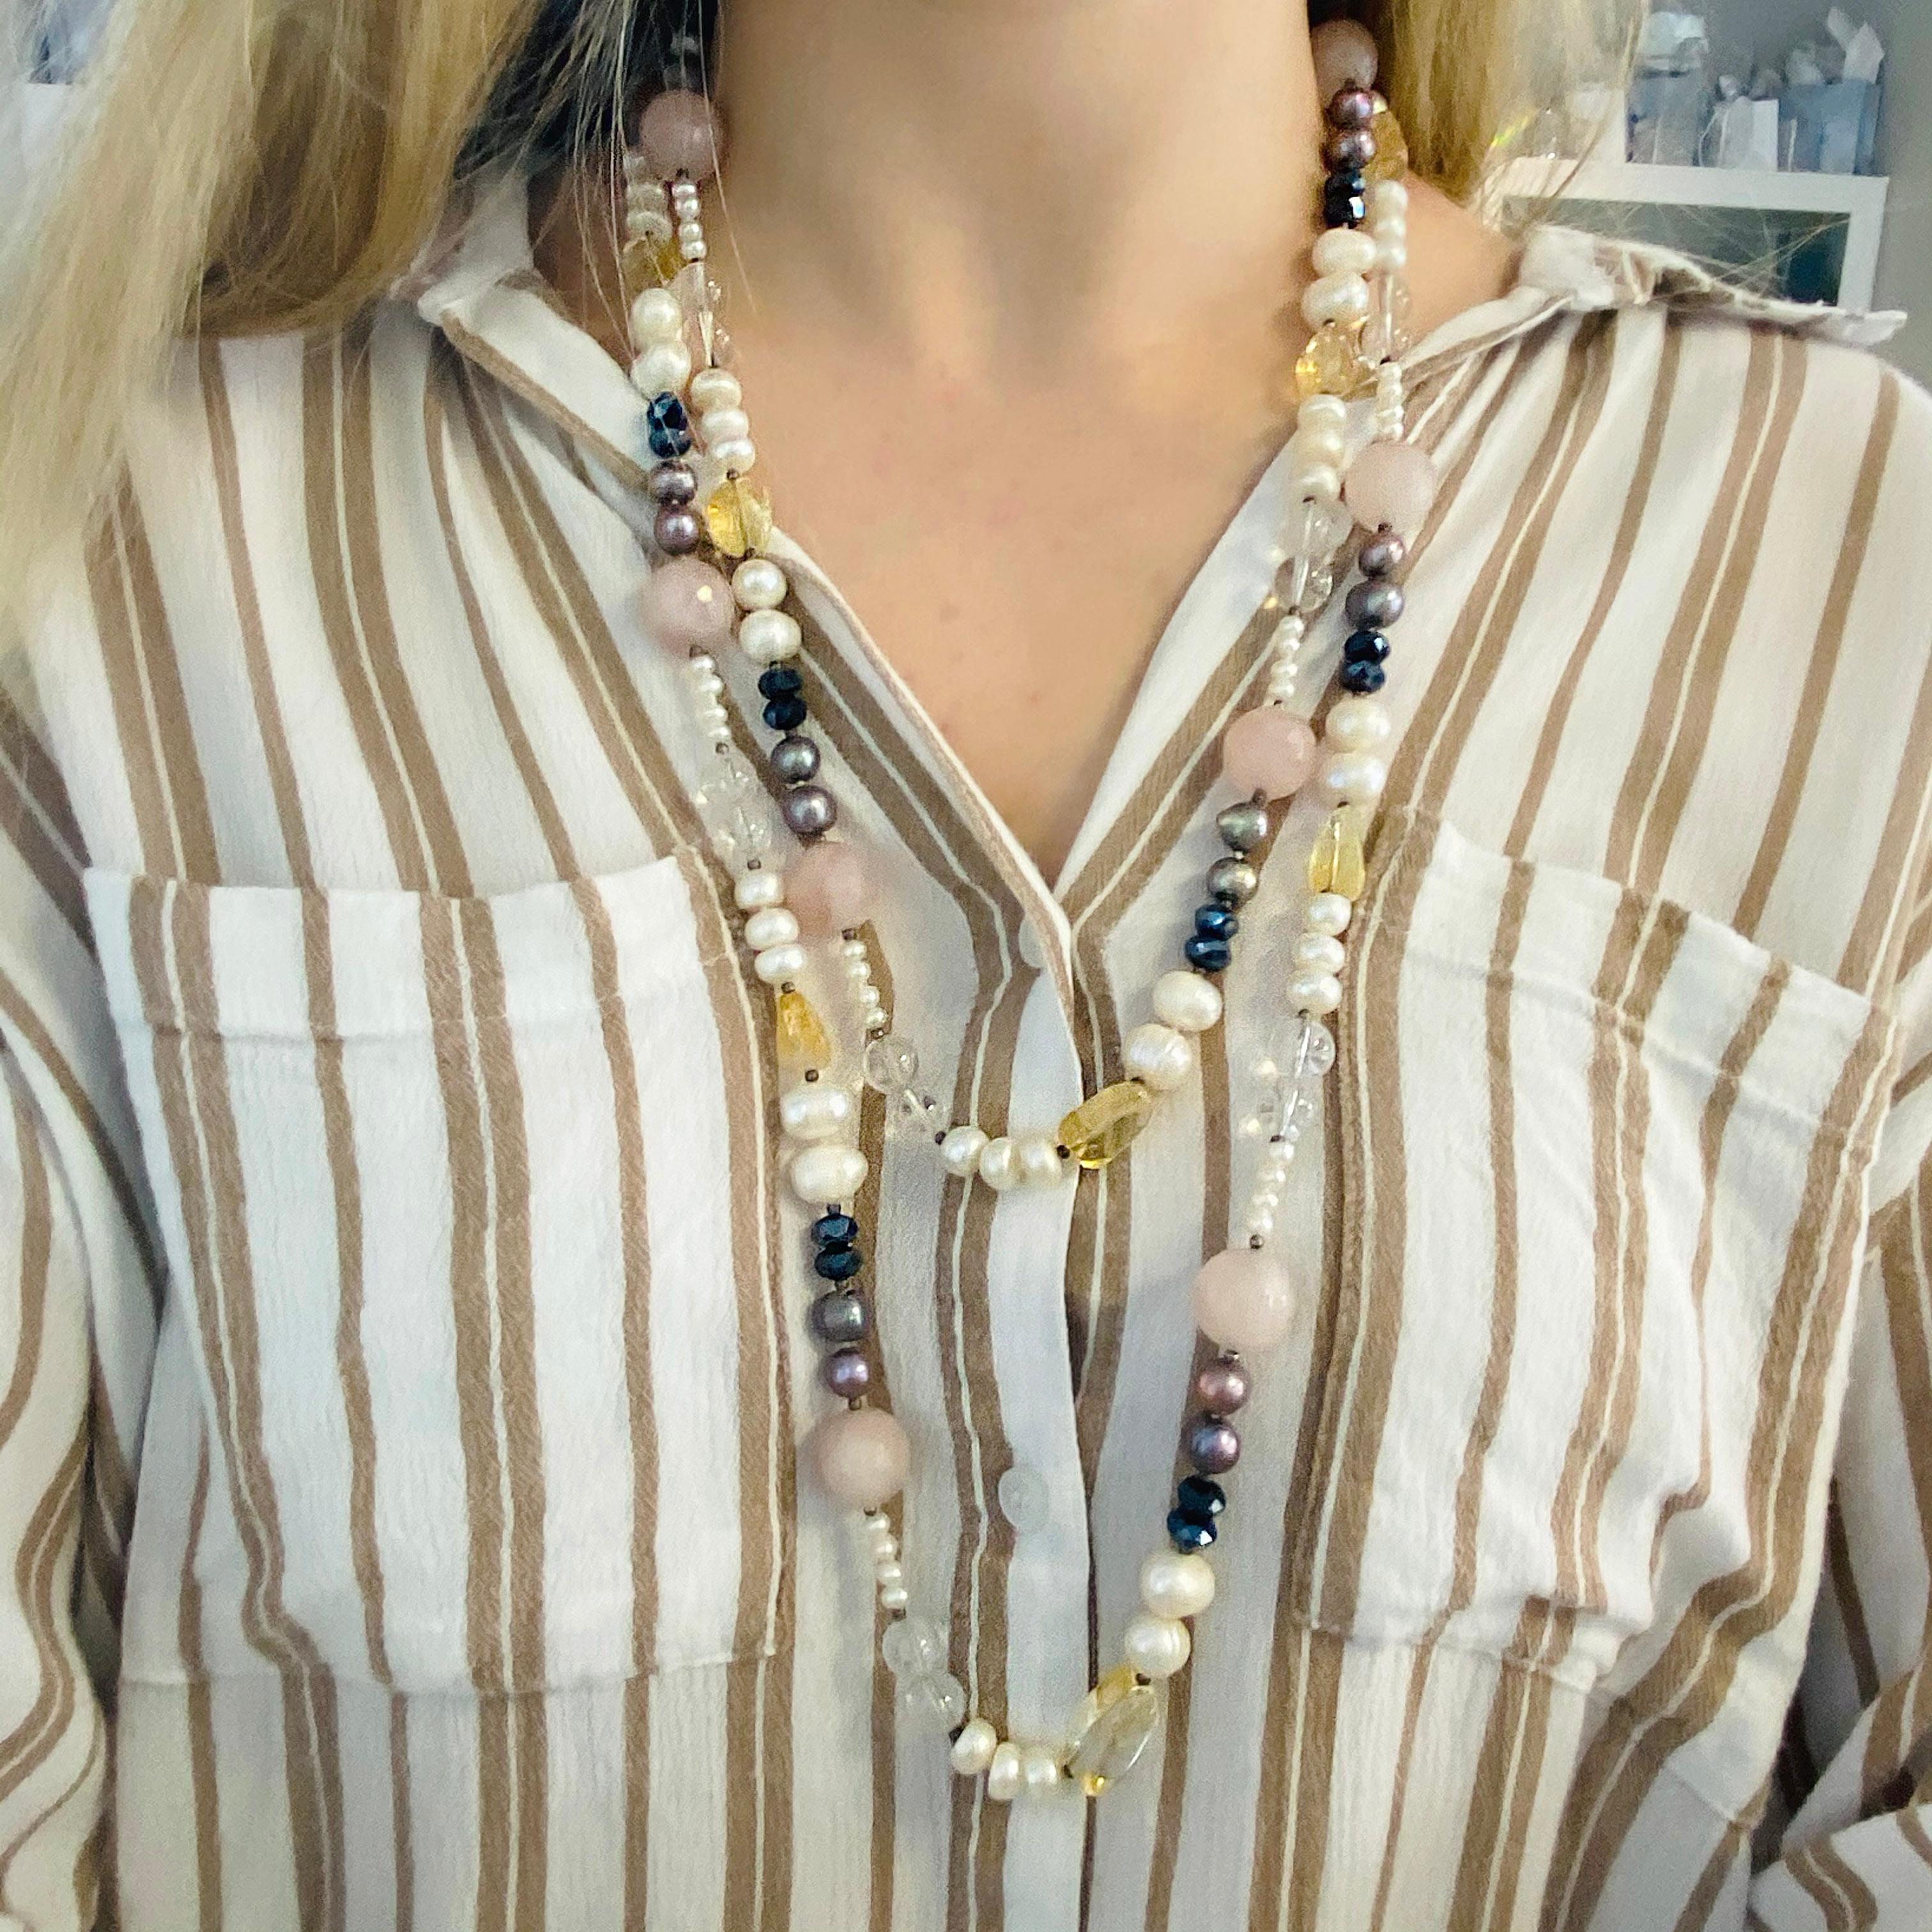 Diese einmalige Halskette aus echten Perlen und Edelsteinen ist ein echtes Statement! Die Zuchtperlen sind weiß und schwarz und gepaart mit echtem Rosenquarz, echtem Amethyst und echtem Citrin. Diese Halskette wurde von unseren Juwelieren